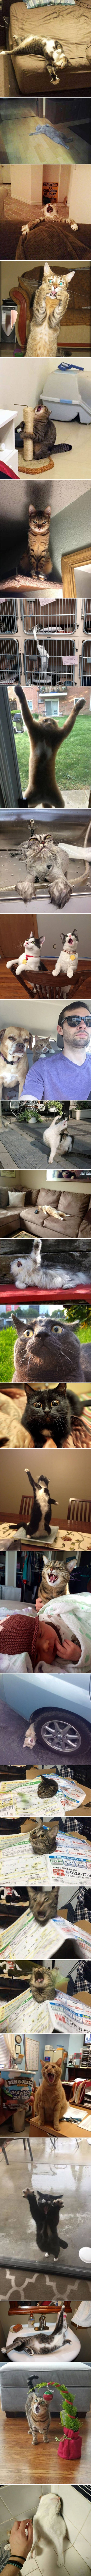 Smiješne slike koje dokazuju da su mačke definitivno najtalentiraniji glumci među životinjama